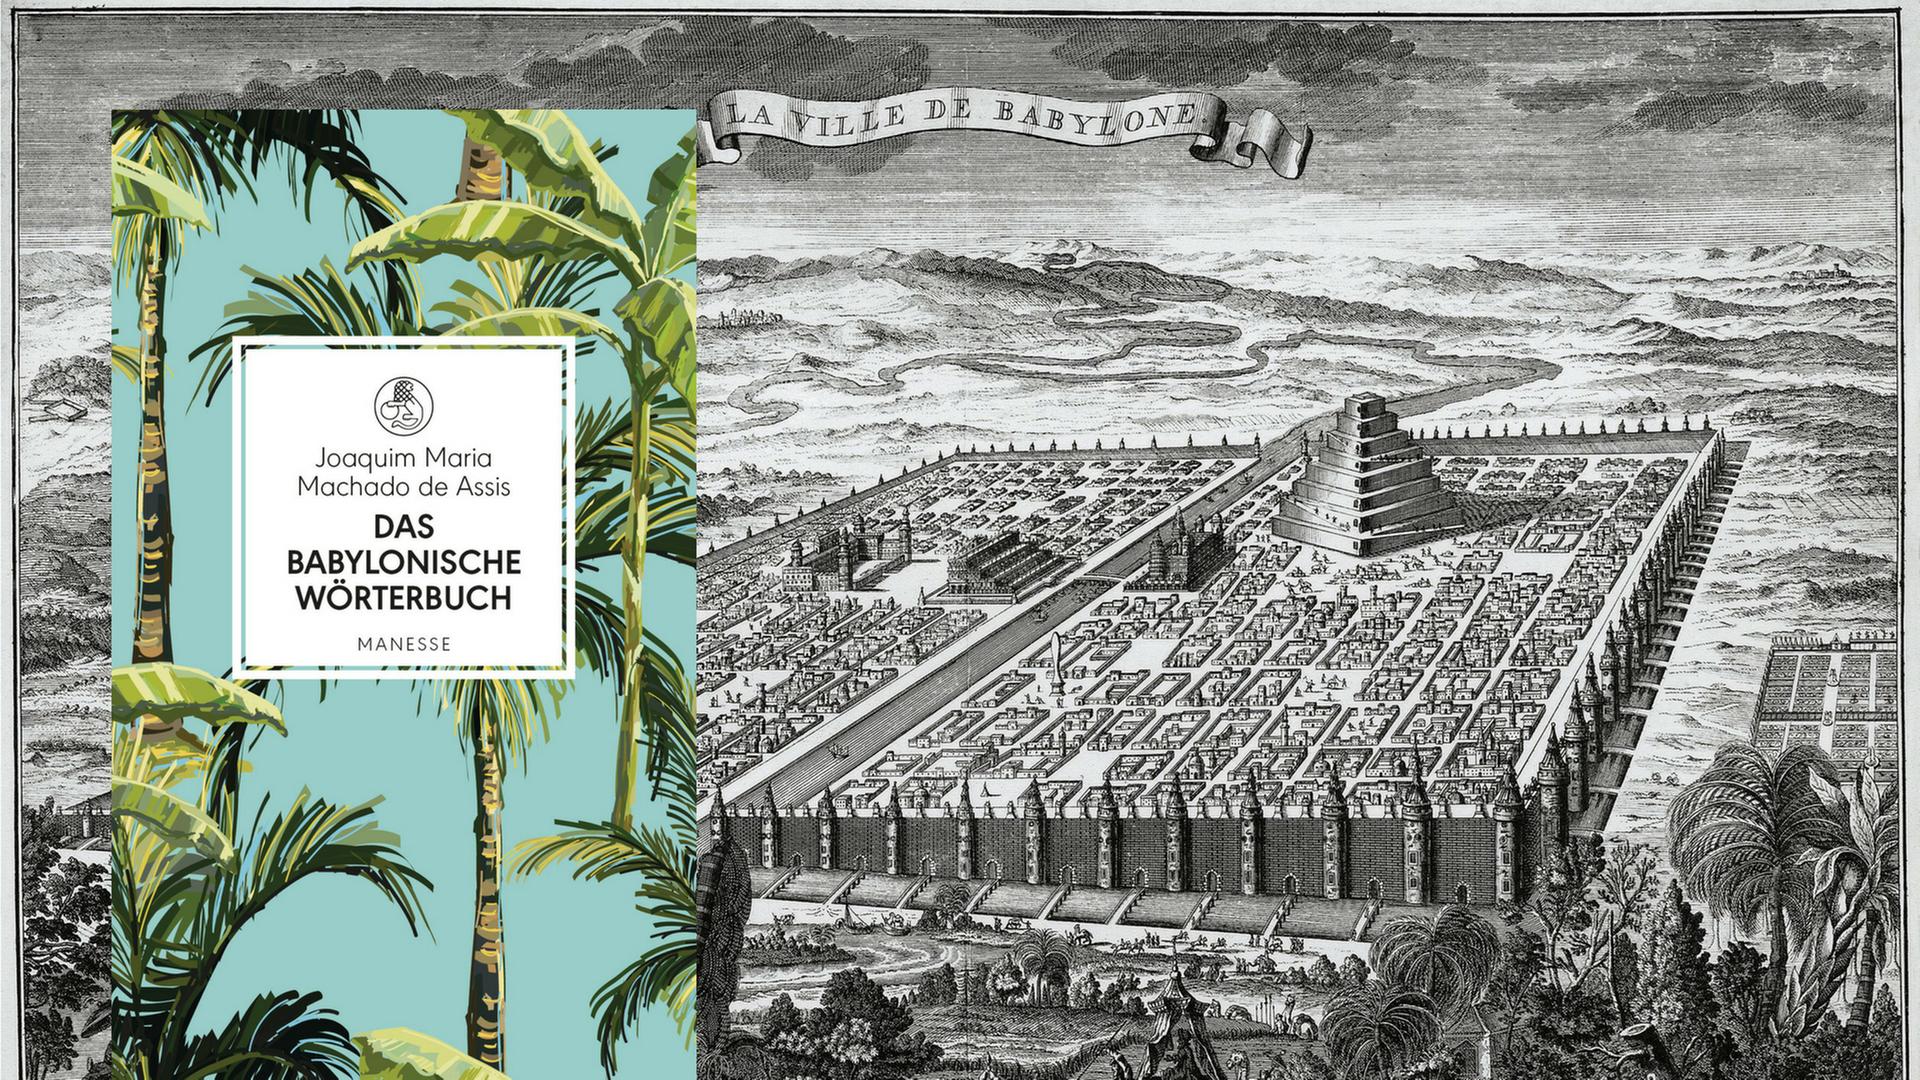 Buchcover: Joaquim Maria Machado de Assis: "Das babylonische Wörterbuch" und eine Grafik der Stadt Babylon mit Turm, hängenden Gärten und Stadtmauer